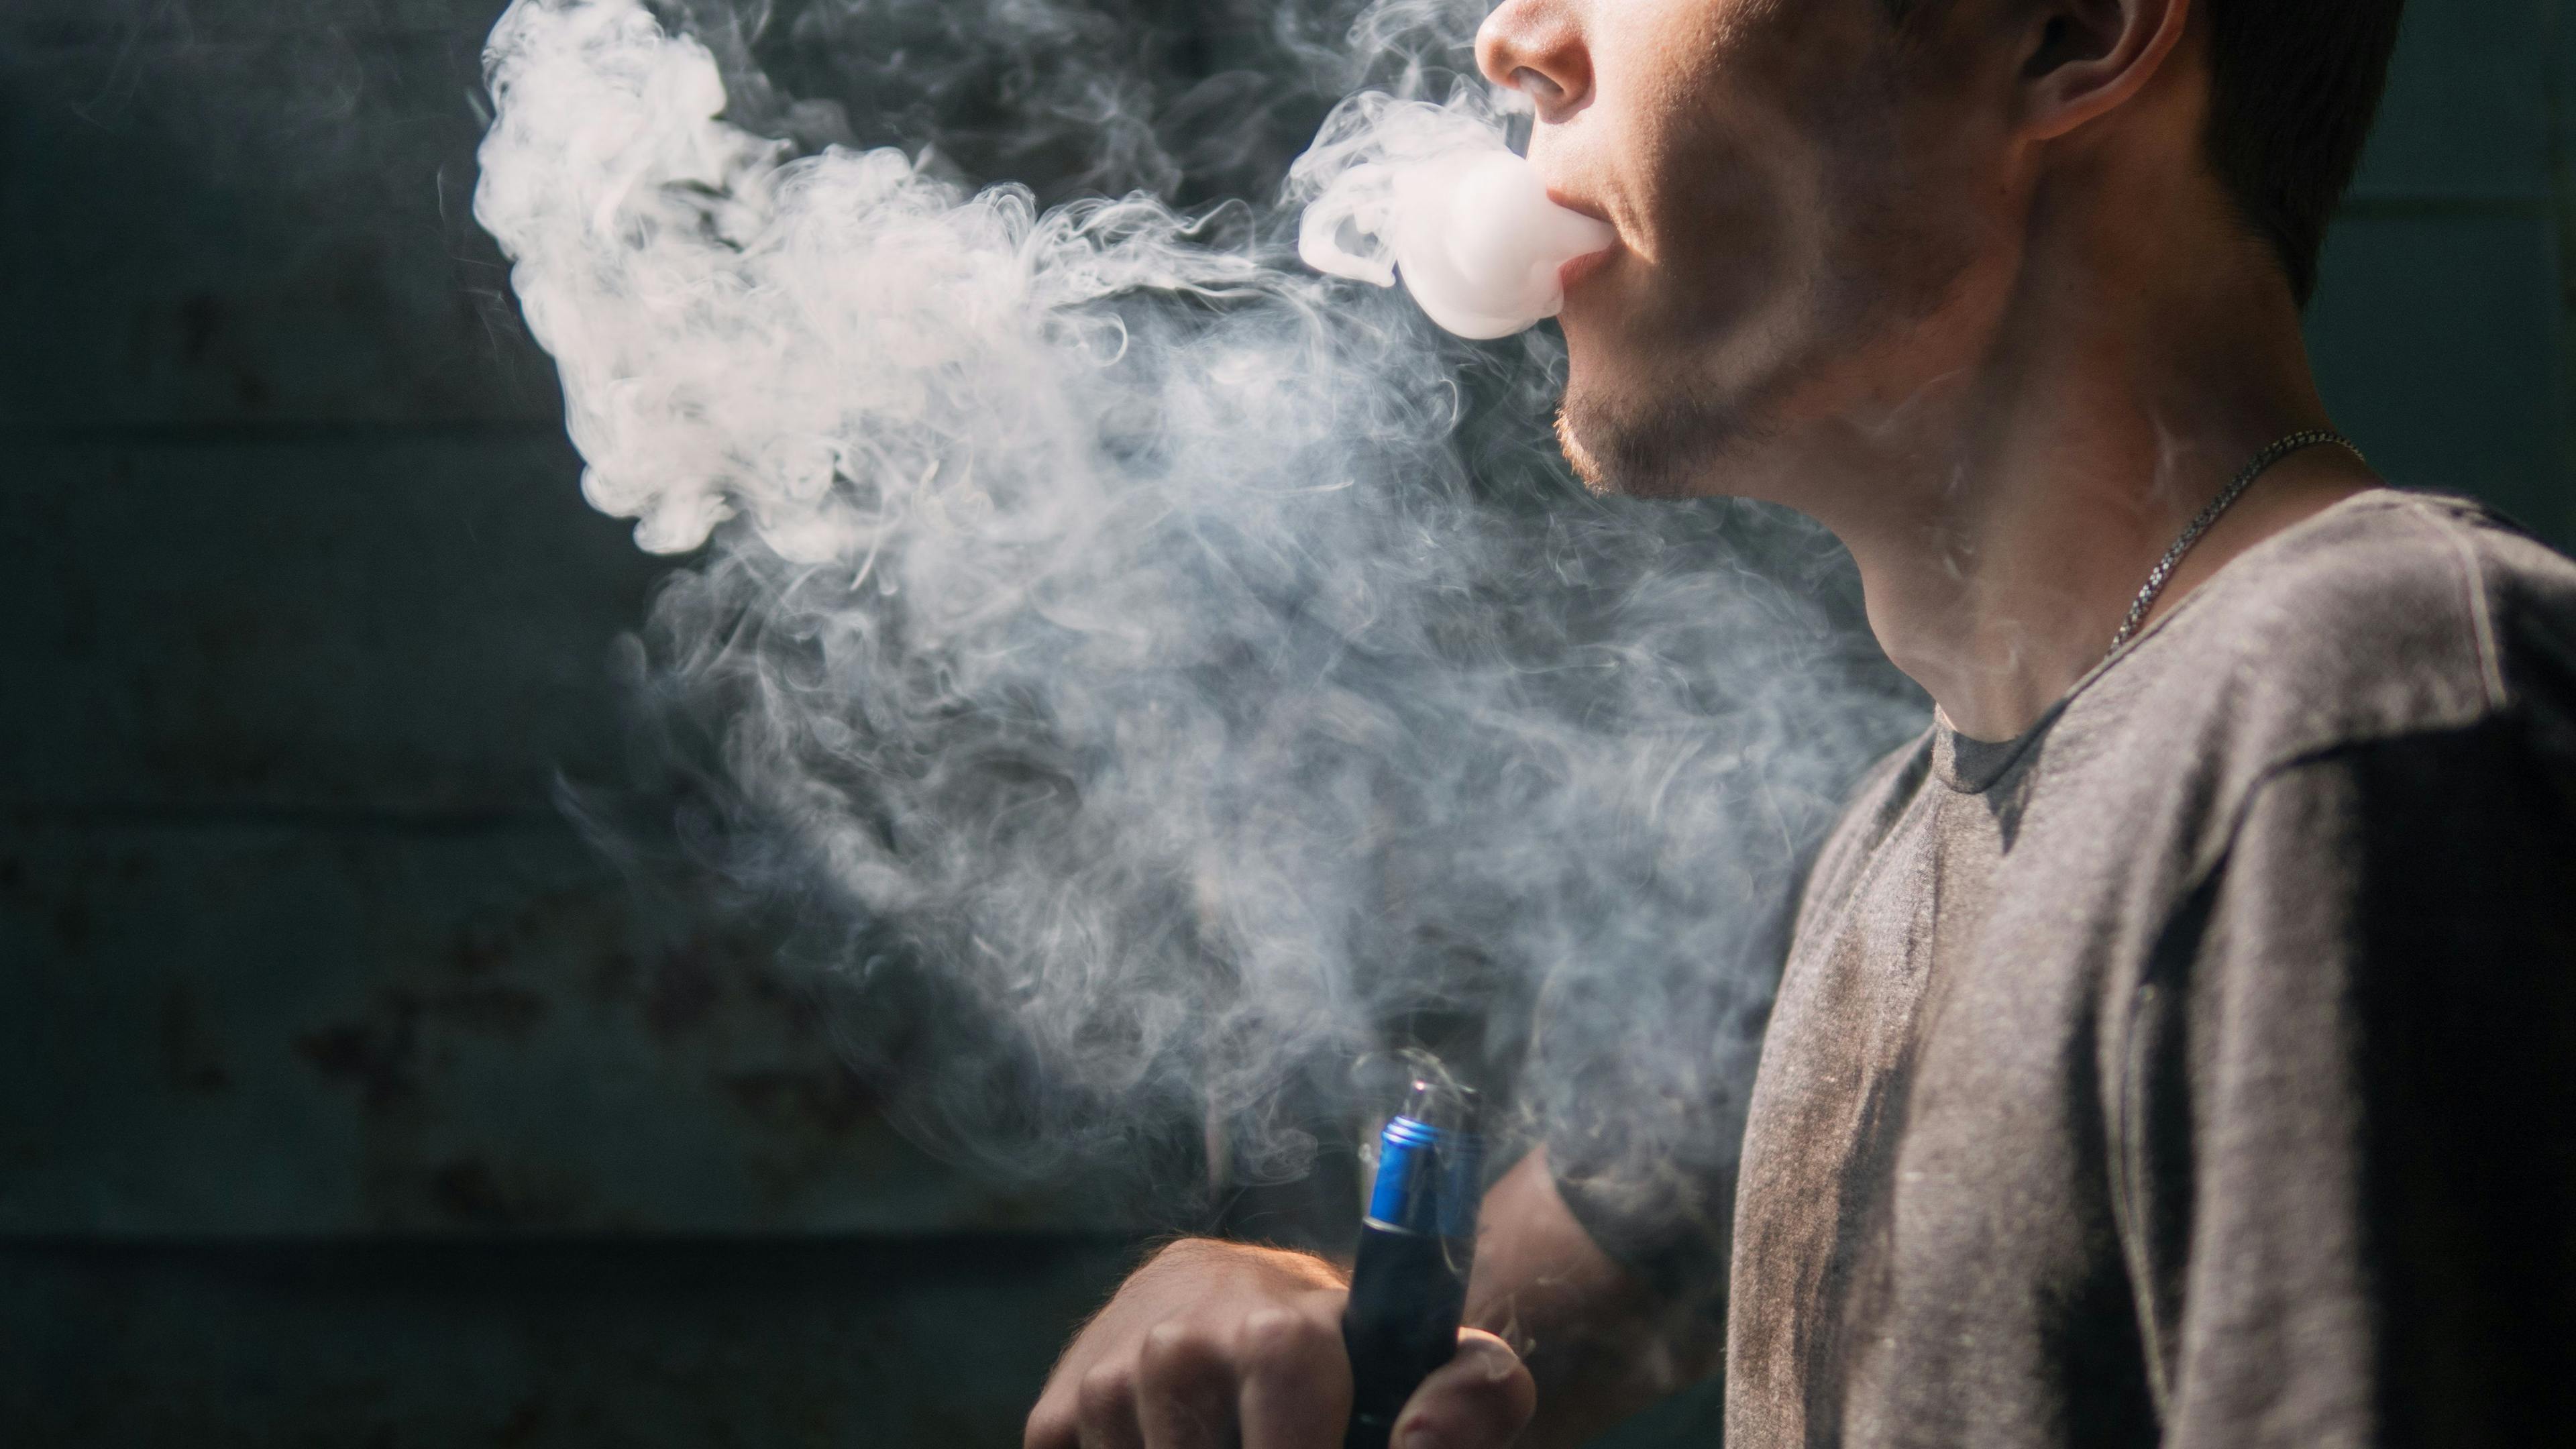 E-Cigarette Users at Higher Risk for Symptomatic COVID-19